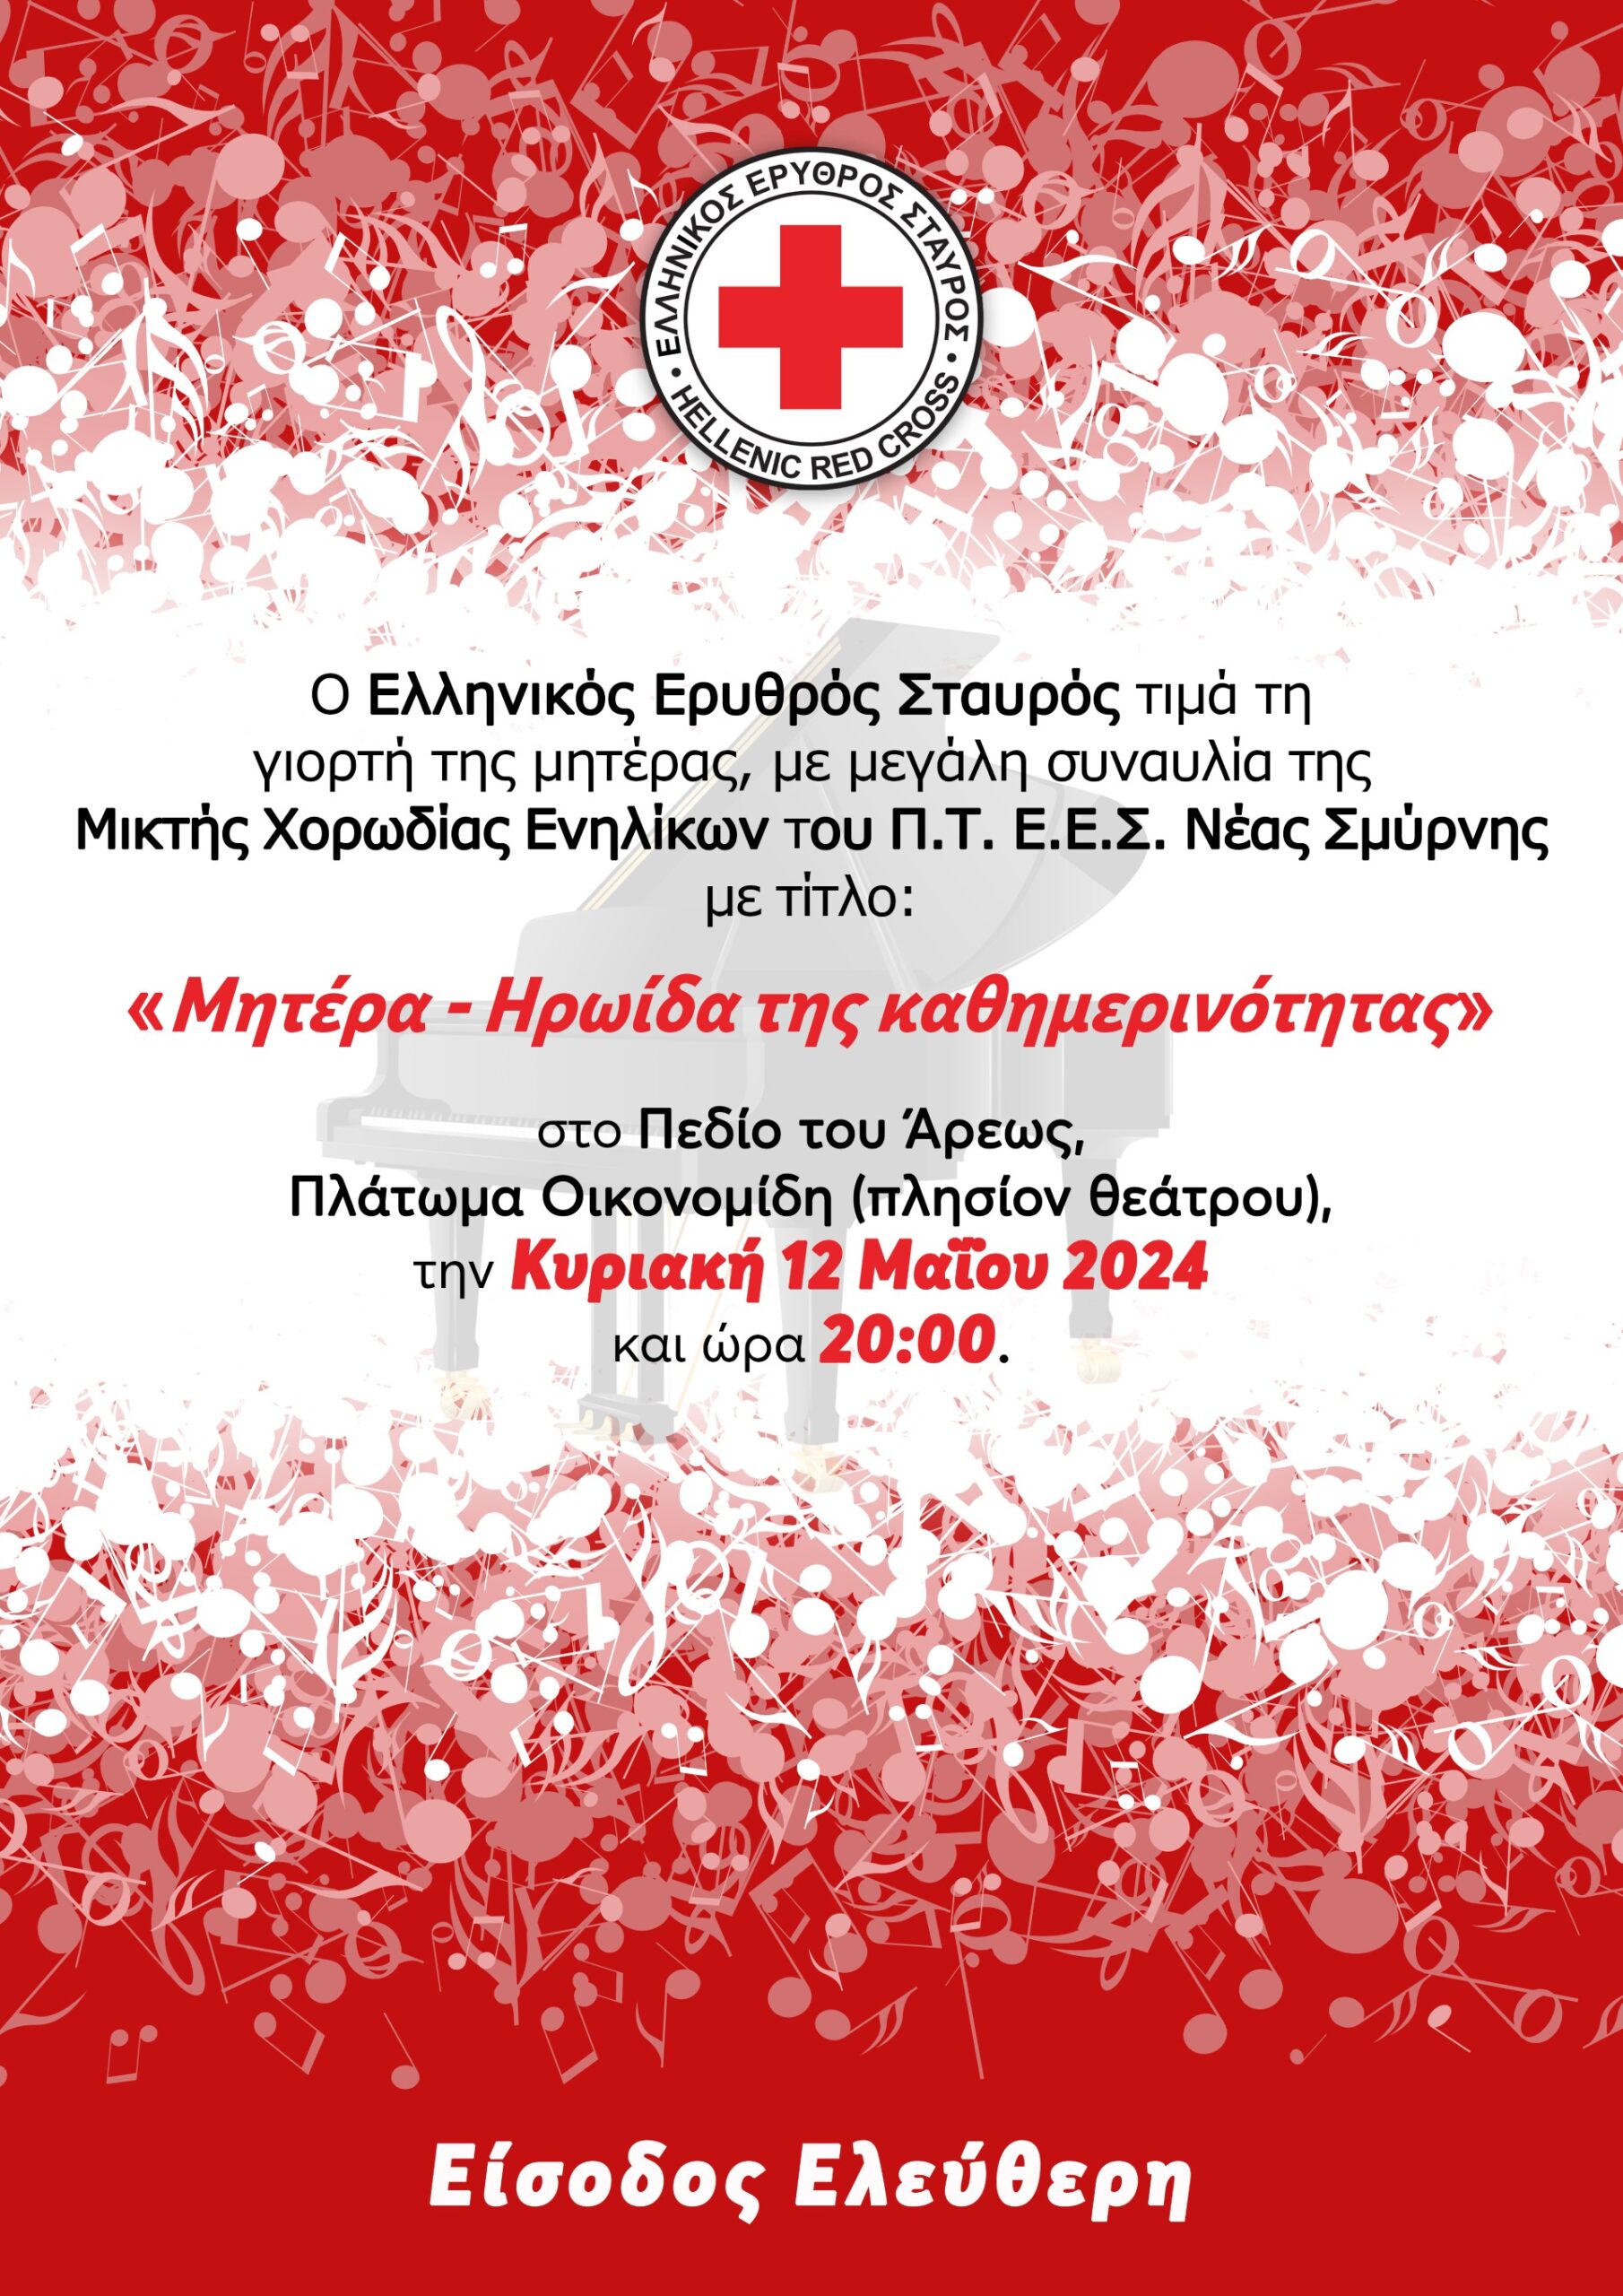 Ελληνικός Ερυθρός Σταυρός: Συναυλία για την Ημέρα της Μητέρας